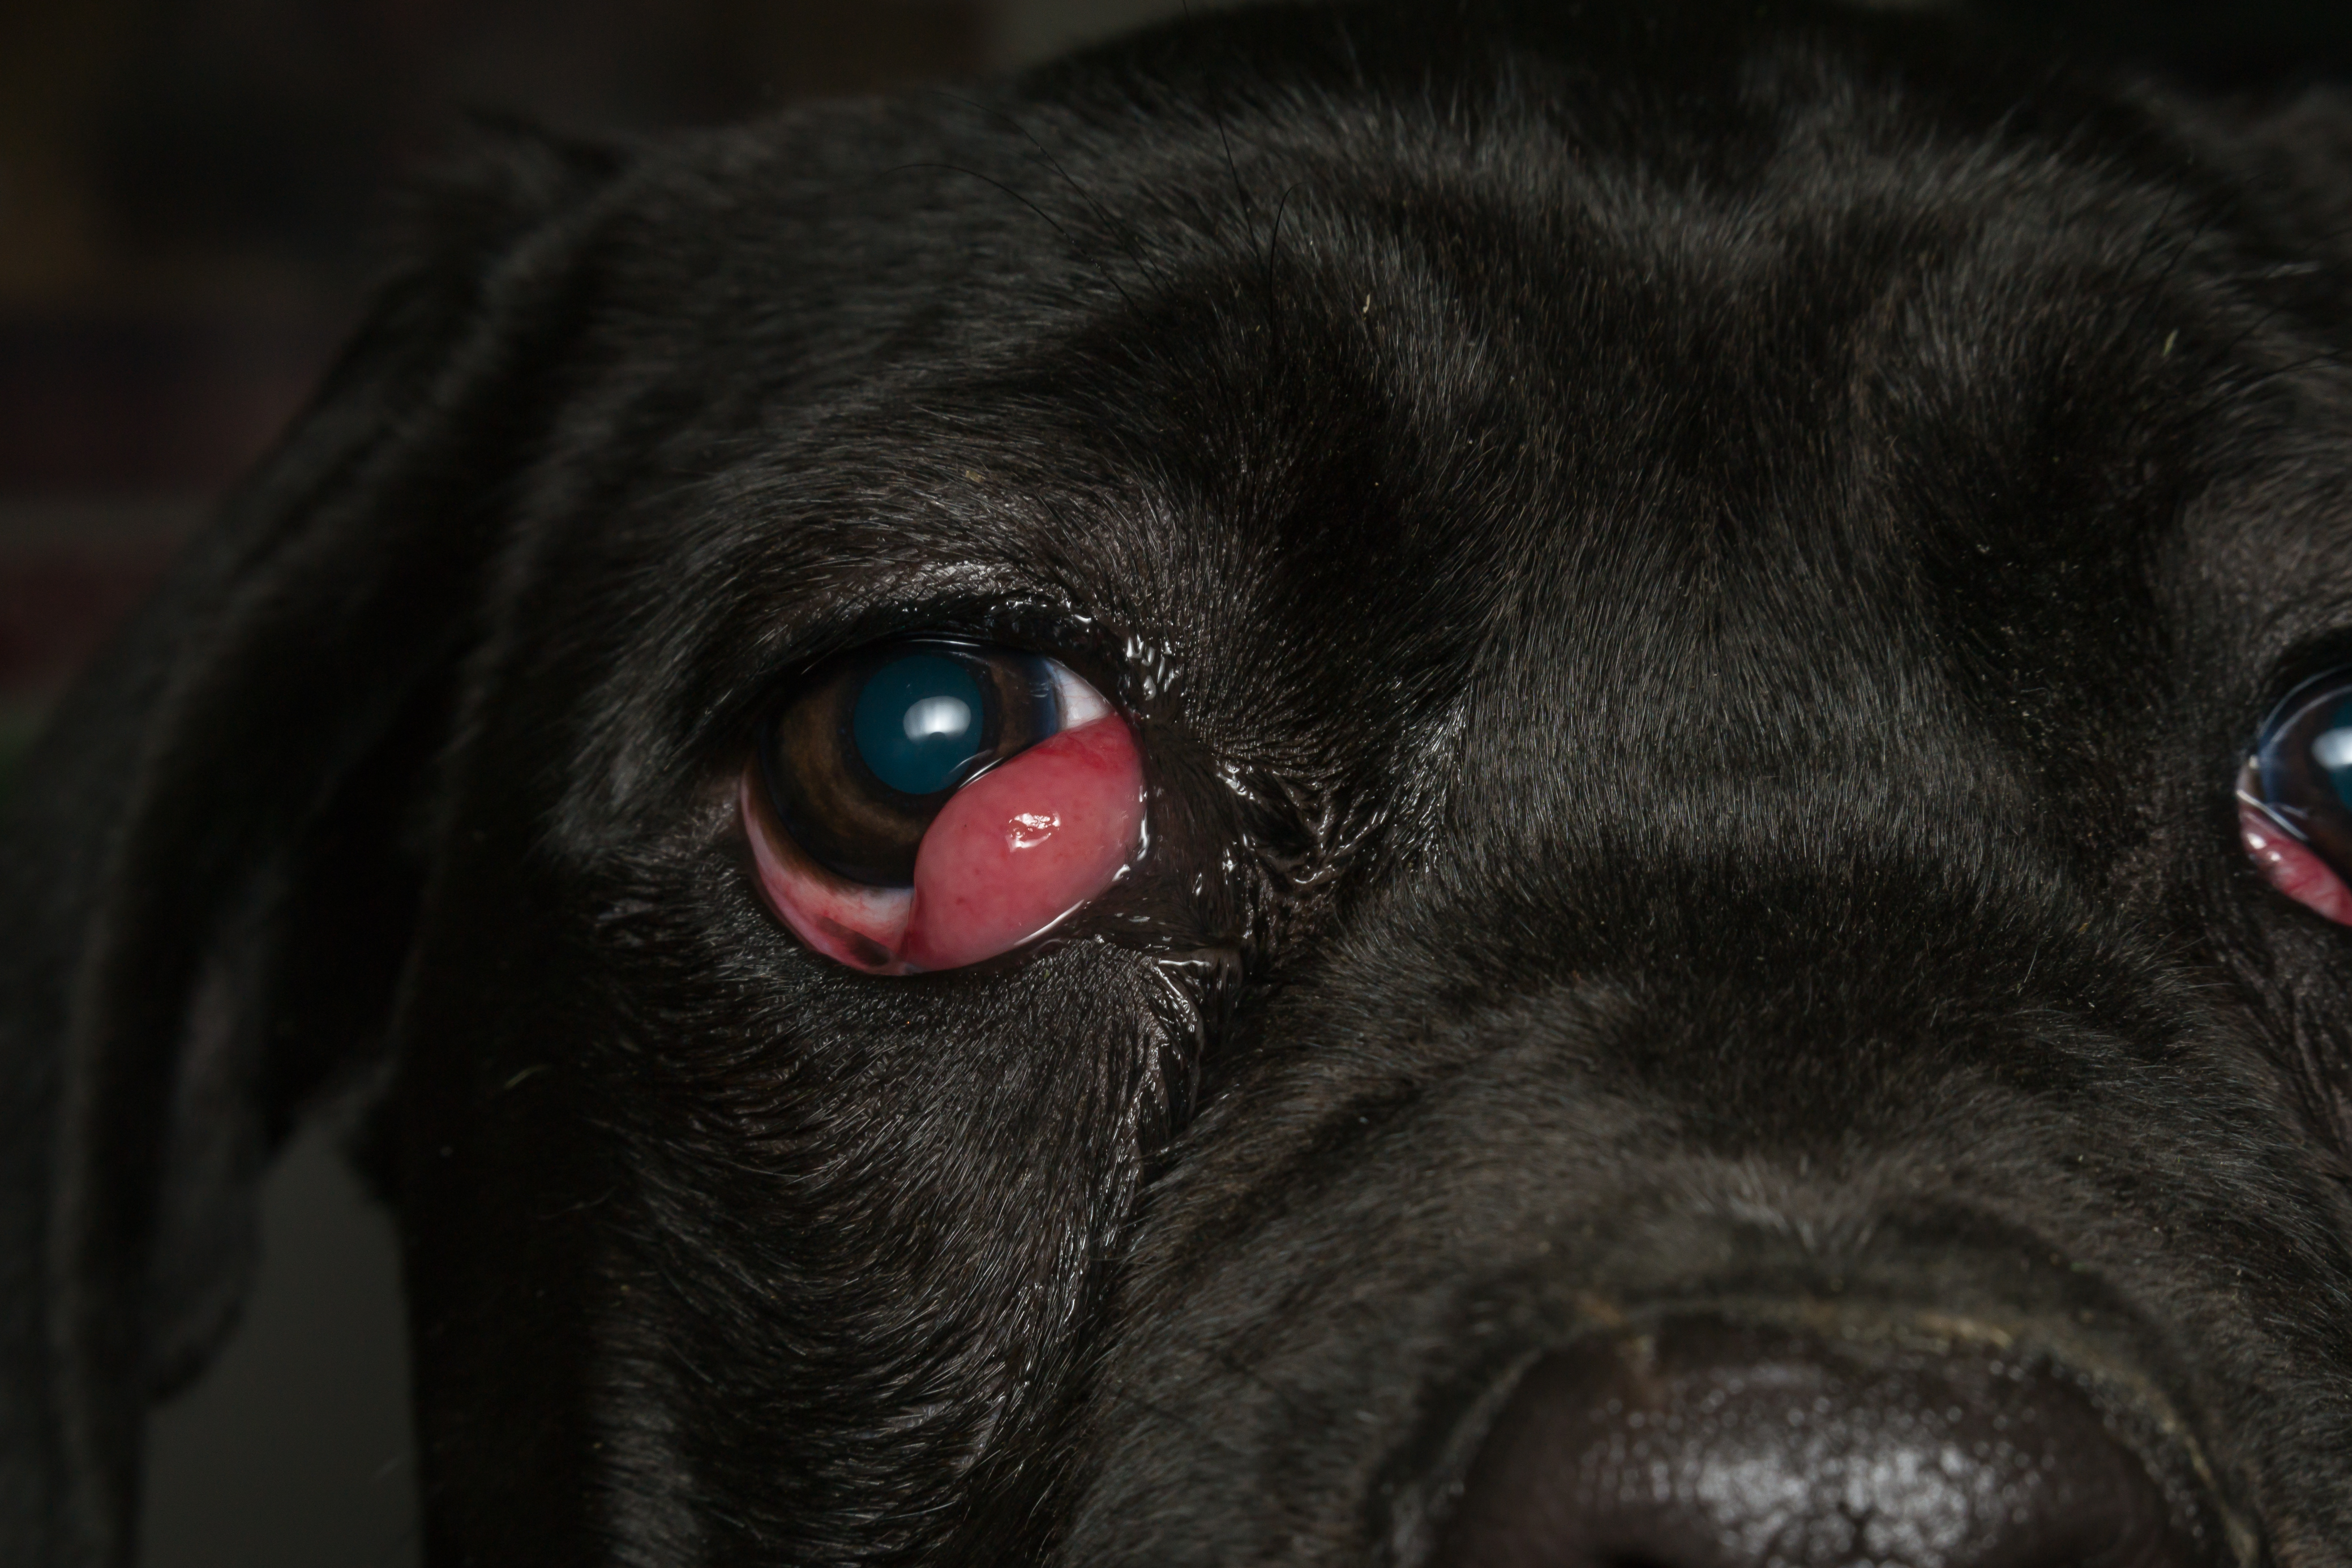 eye injuries of a pet